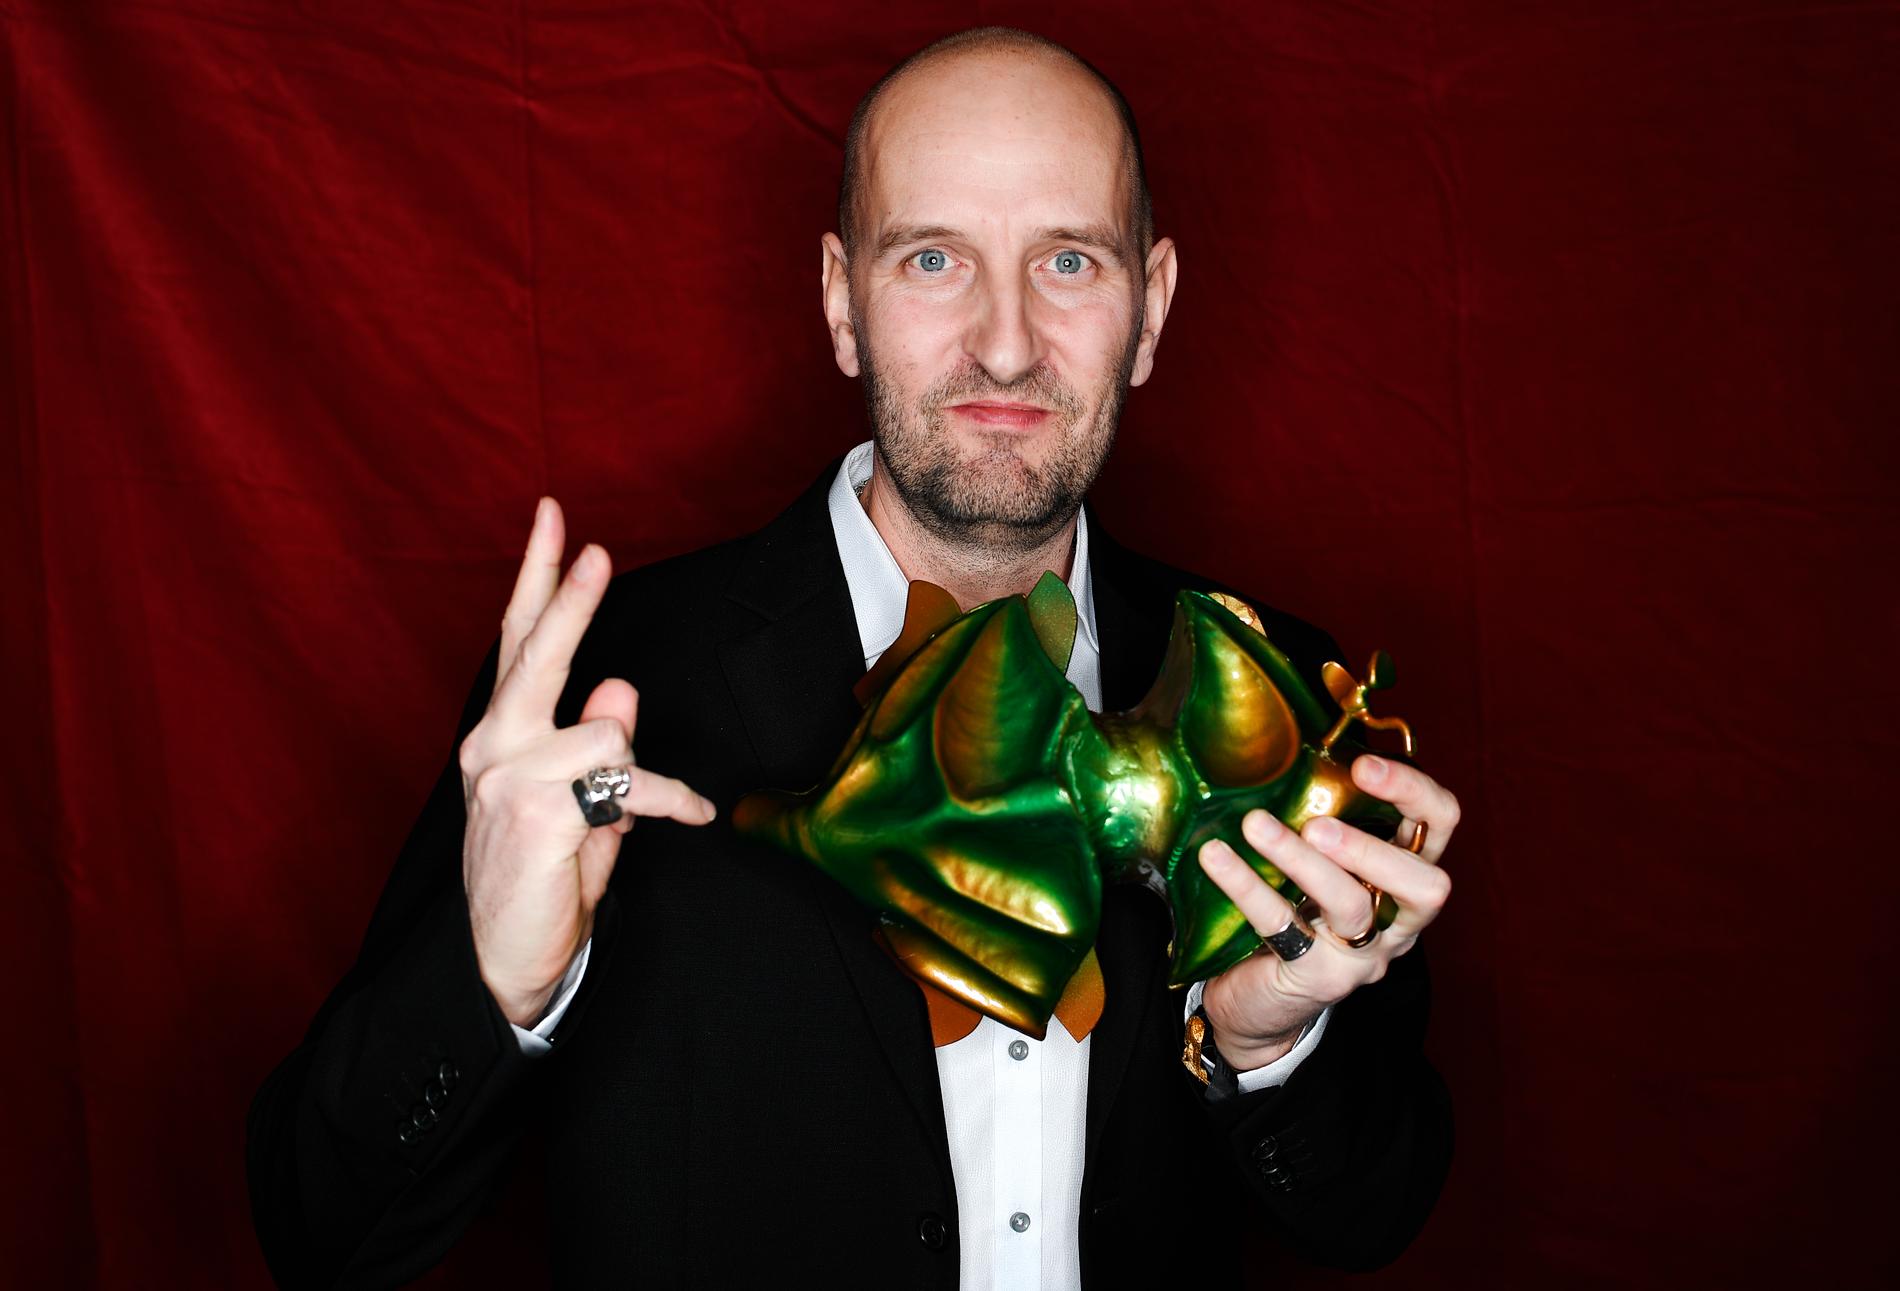 Johan Testad tilldelas priset för bästa originalmusik för filmen ”Goliat”.